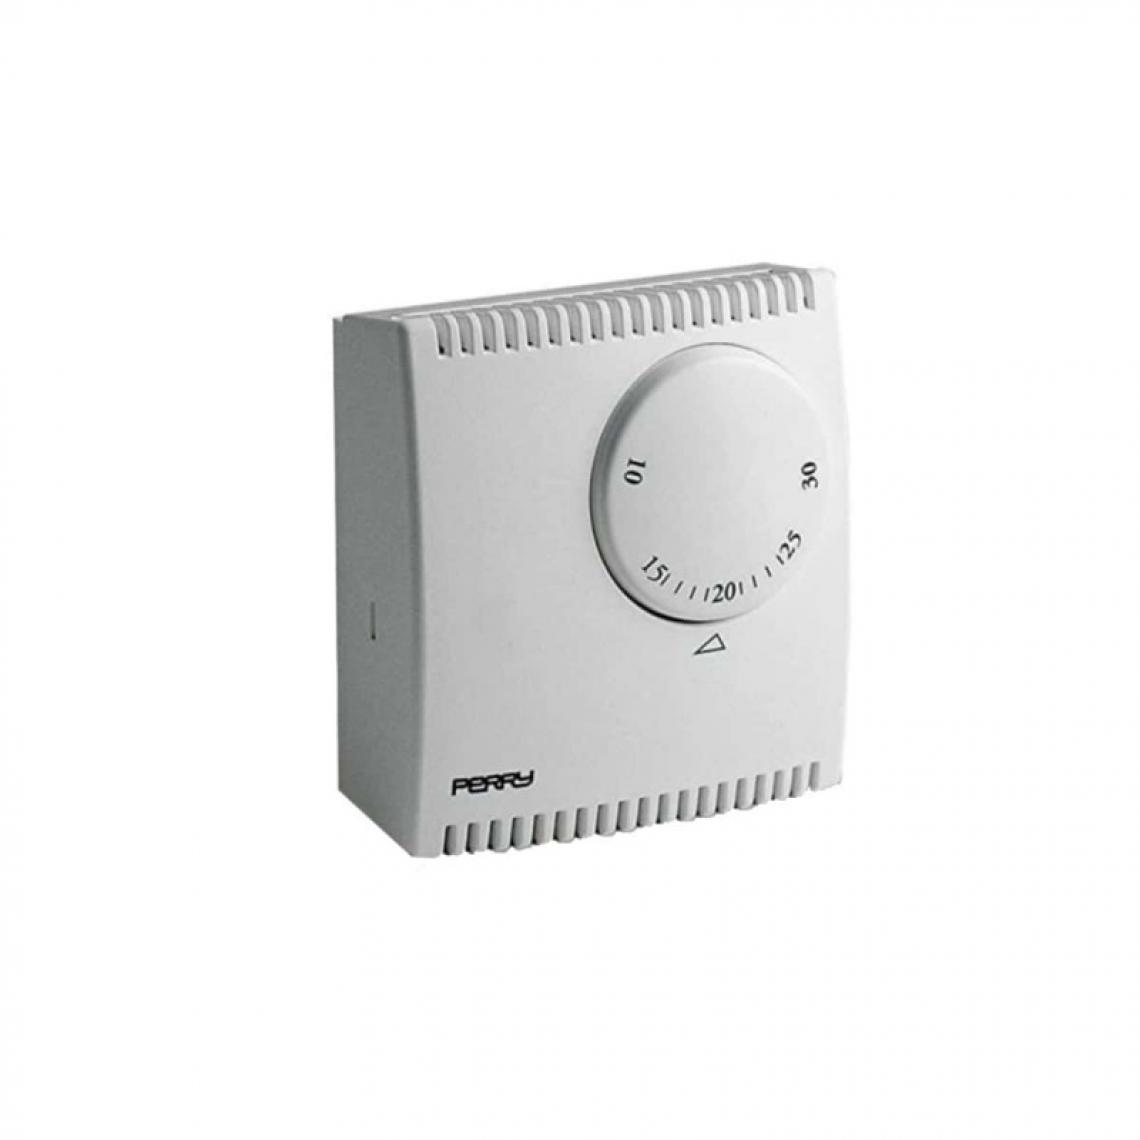 Divers Marques - Thermostat pour expansion de gaz PERRY - sans pilote - 03015 - Accessoires barbecue